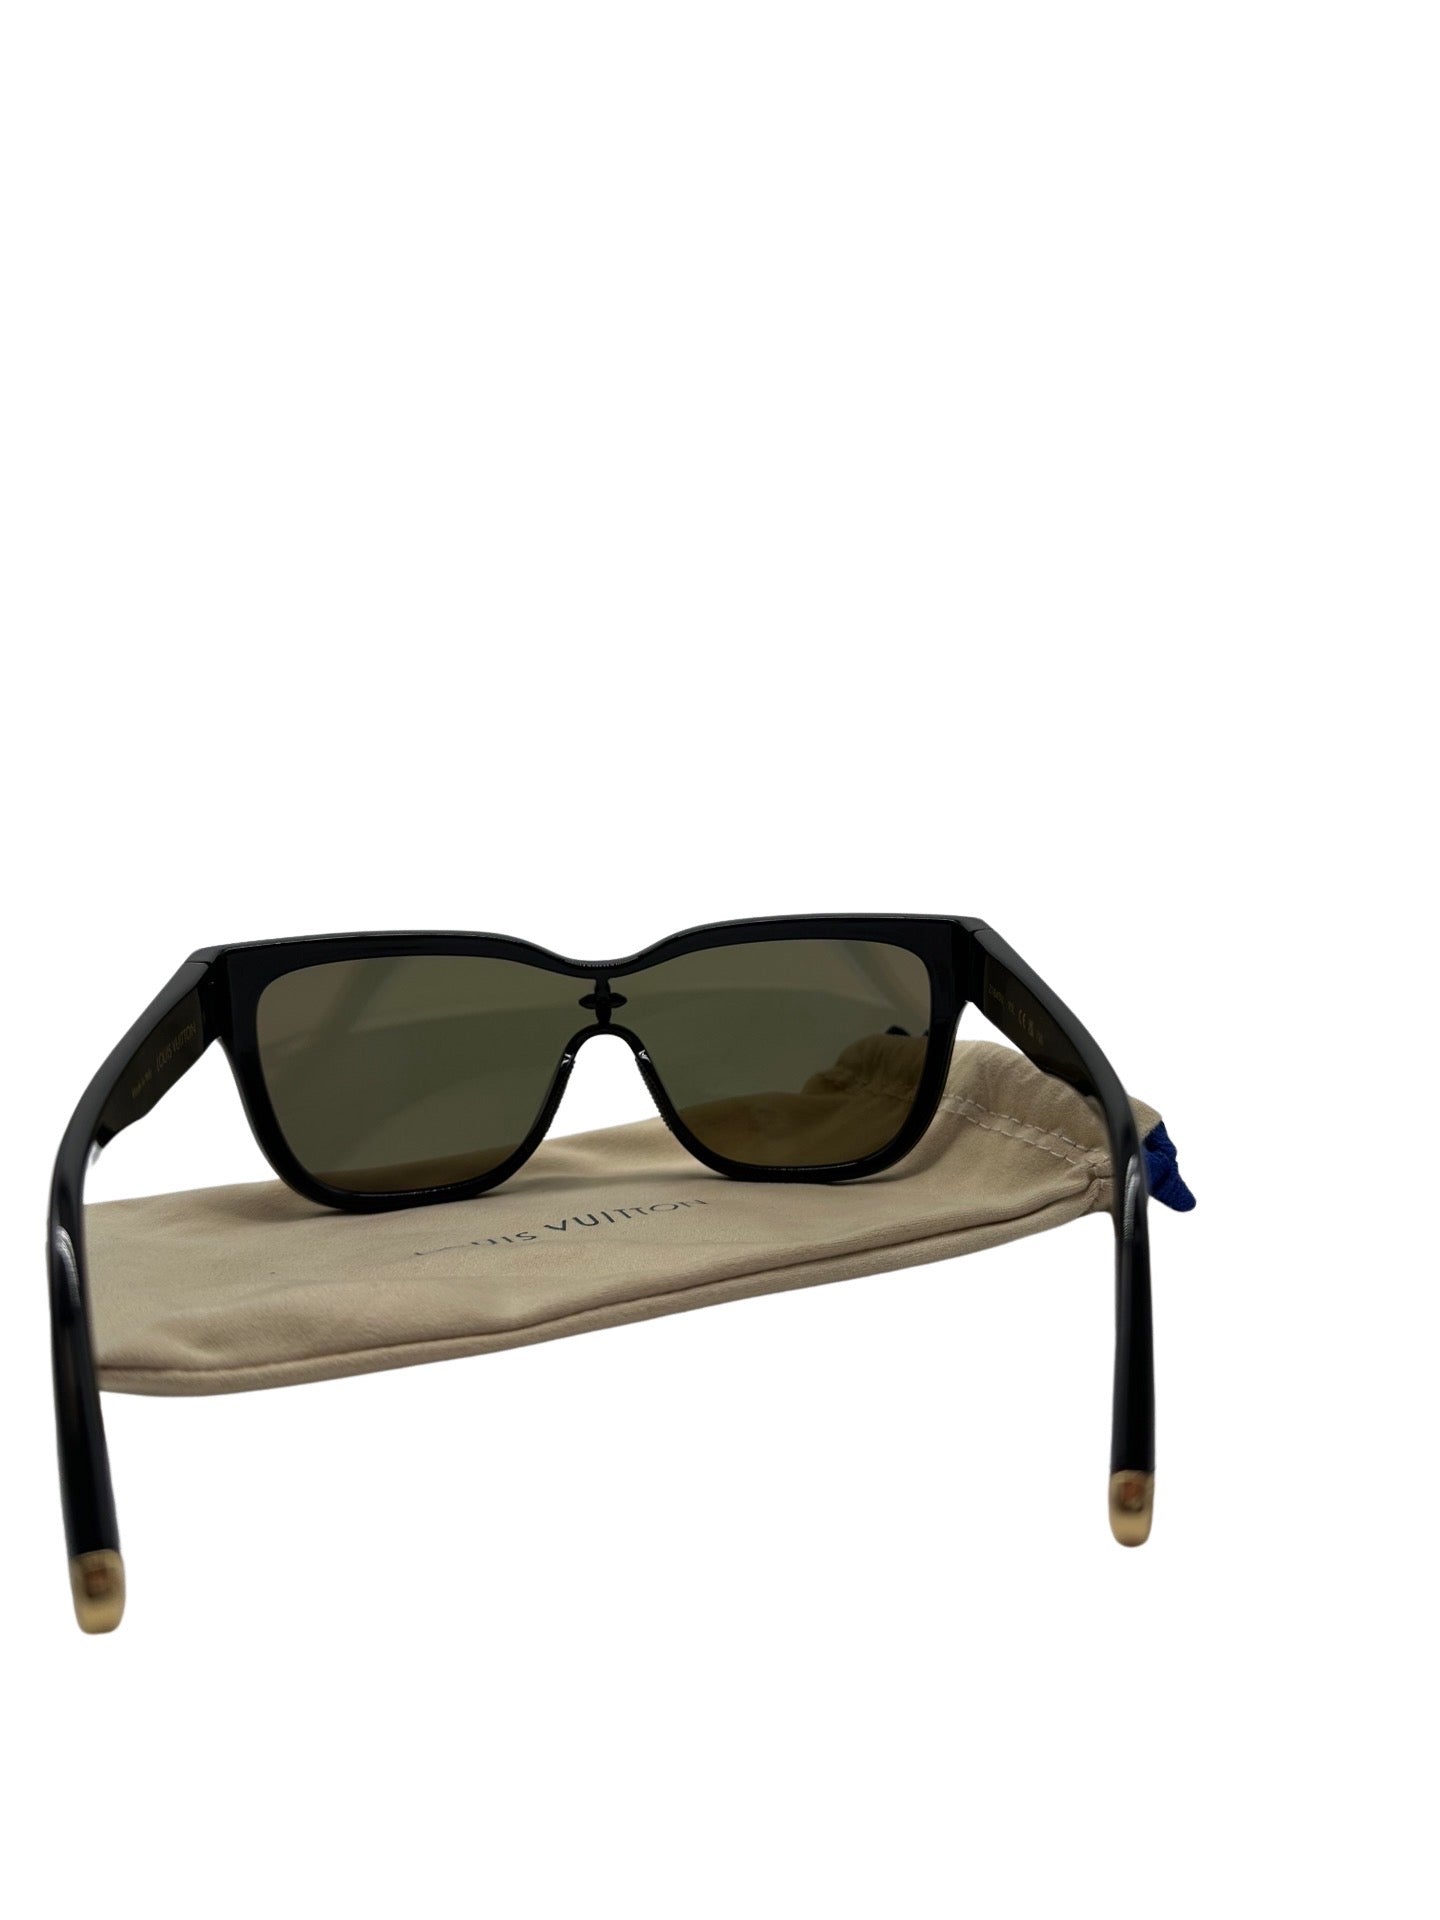 Louis Vuitton Square Sunglasses  Sunglasses, Louis vuitton, Vuitton